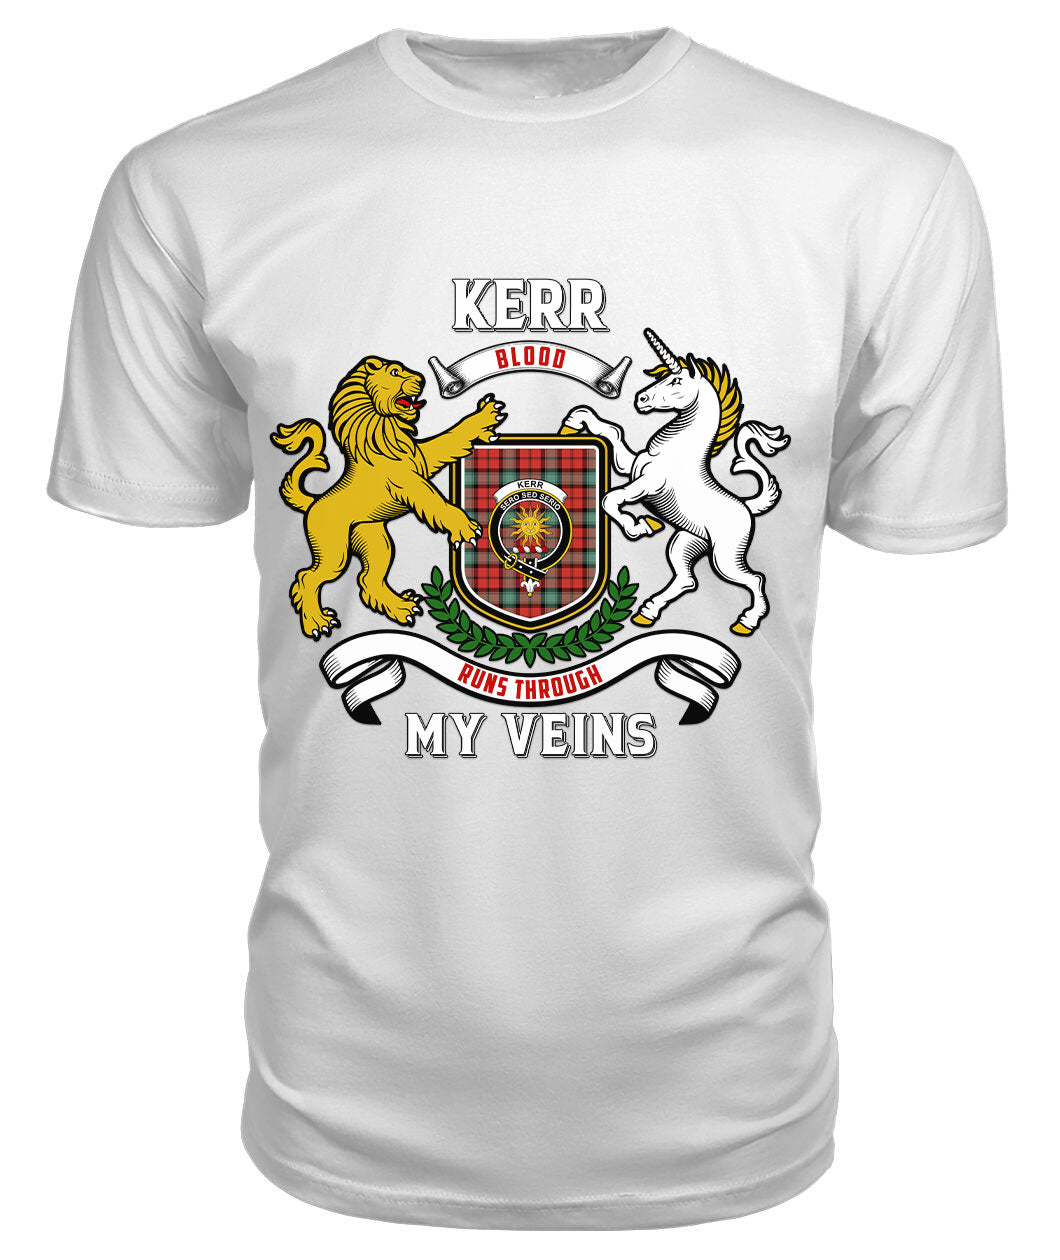 Kerr Ancient Tartan Crest 2D T-shirt - Blood Runs Through My Veins Style